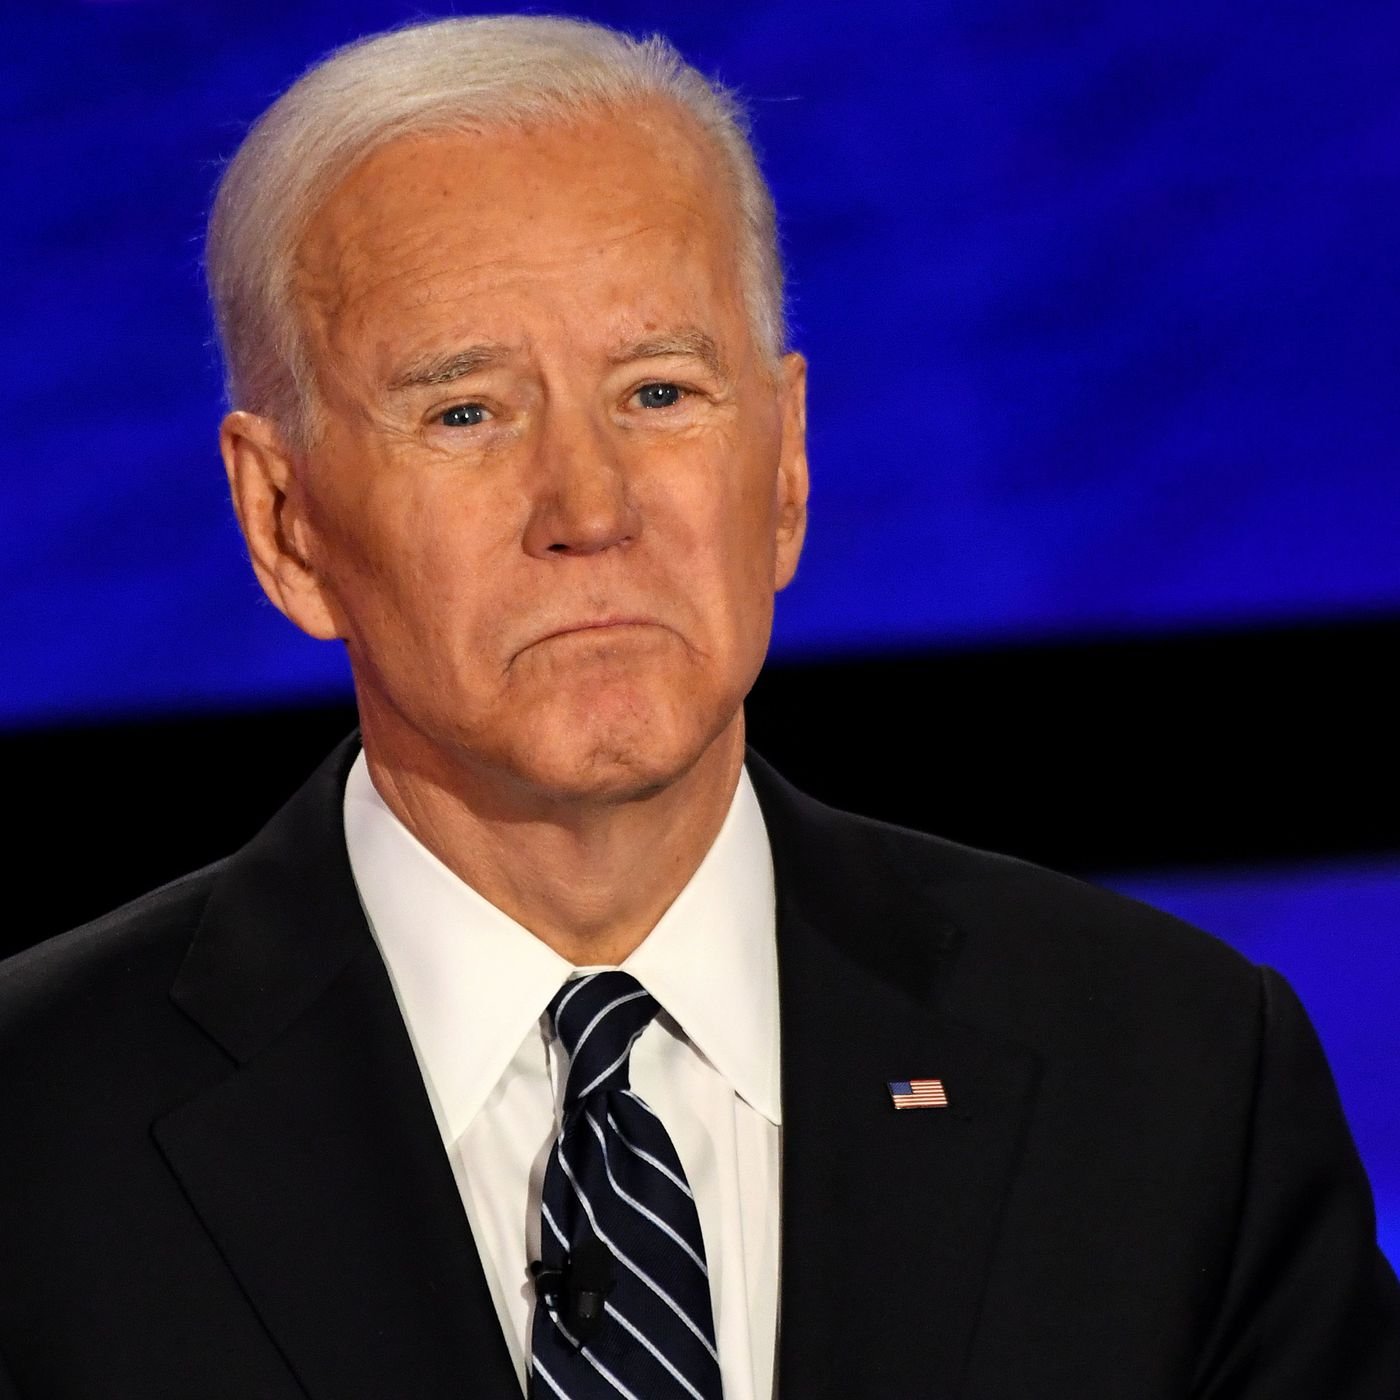 Joe Biden wants to revoke Section 230 - The Verge